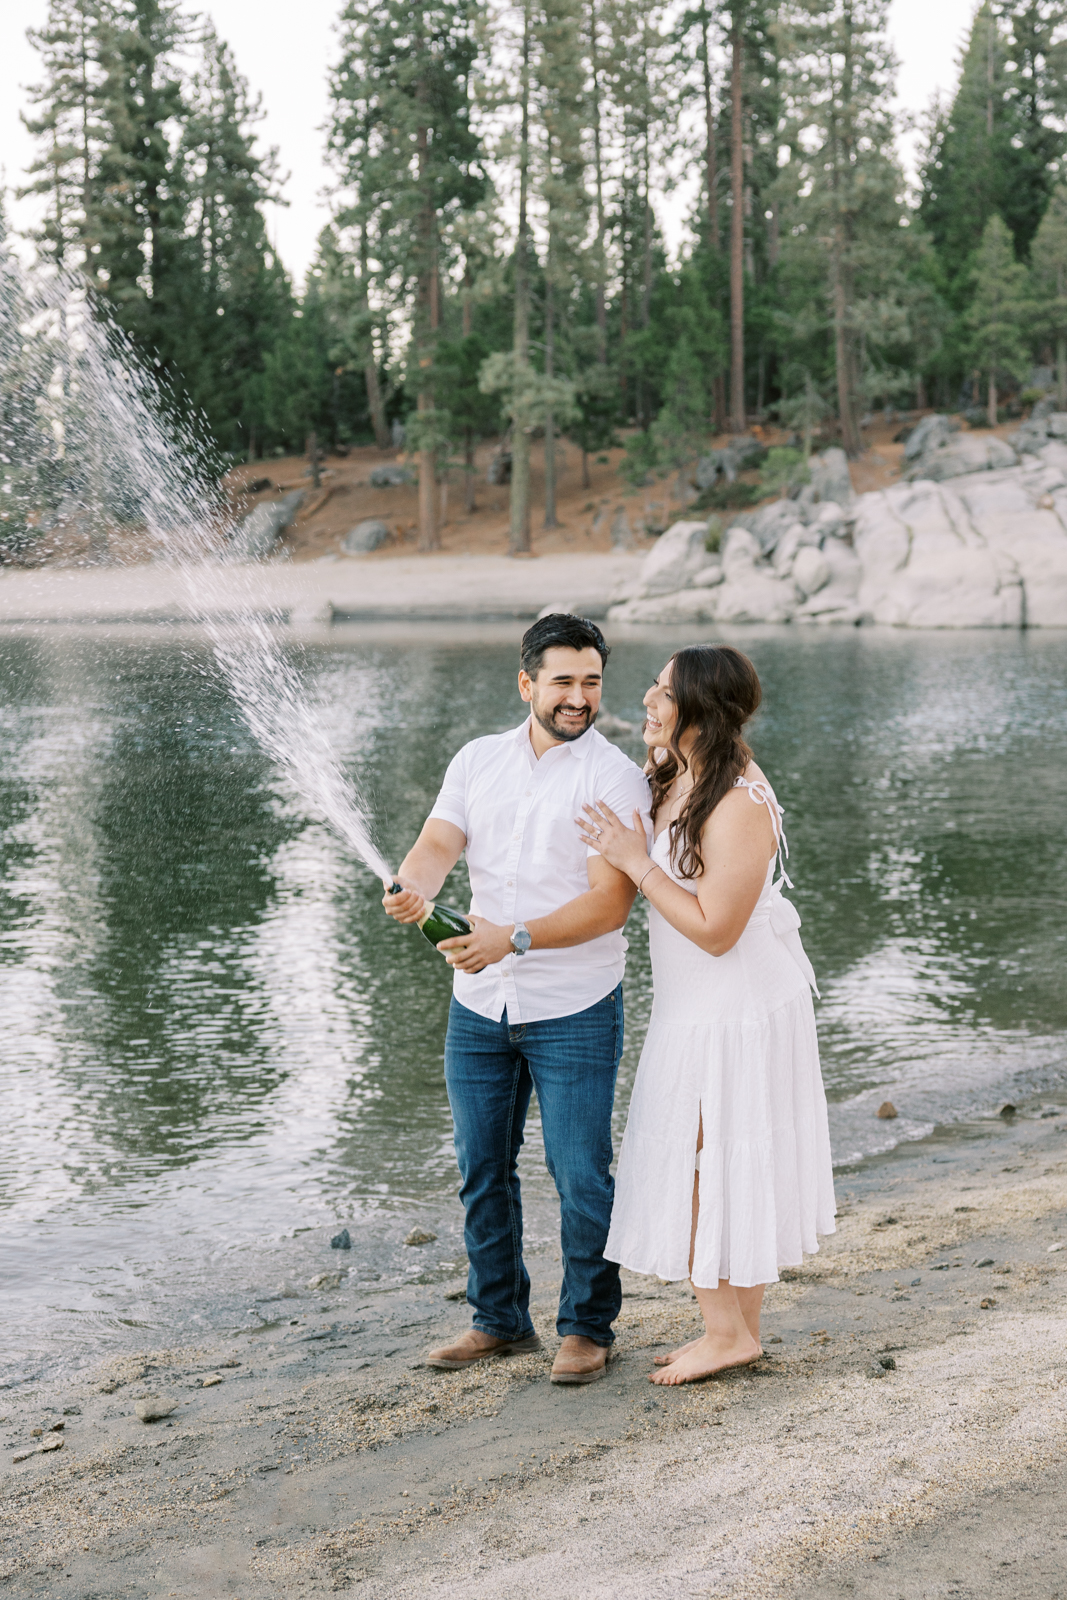 Mountain engagement photos at Shaver Lake by Yosemite wedding photographer Ashley Norton Photography